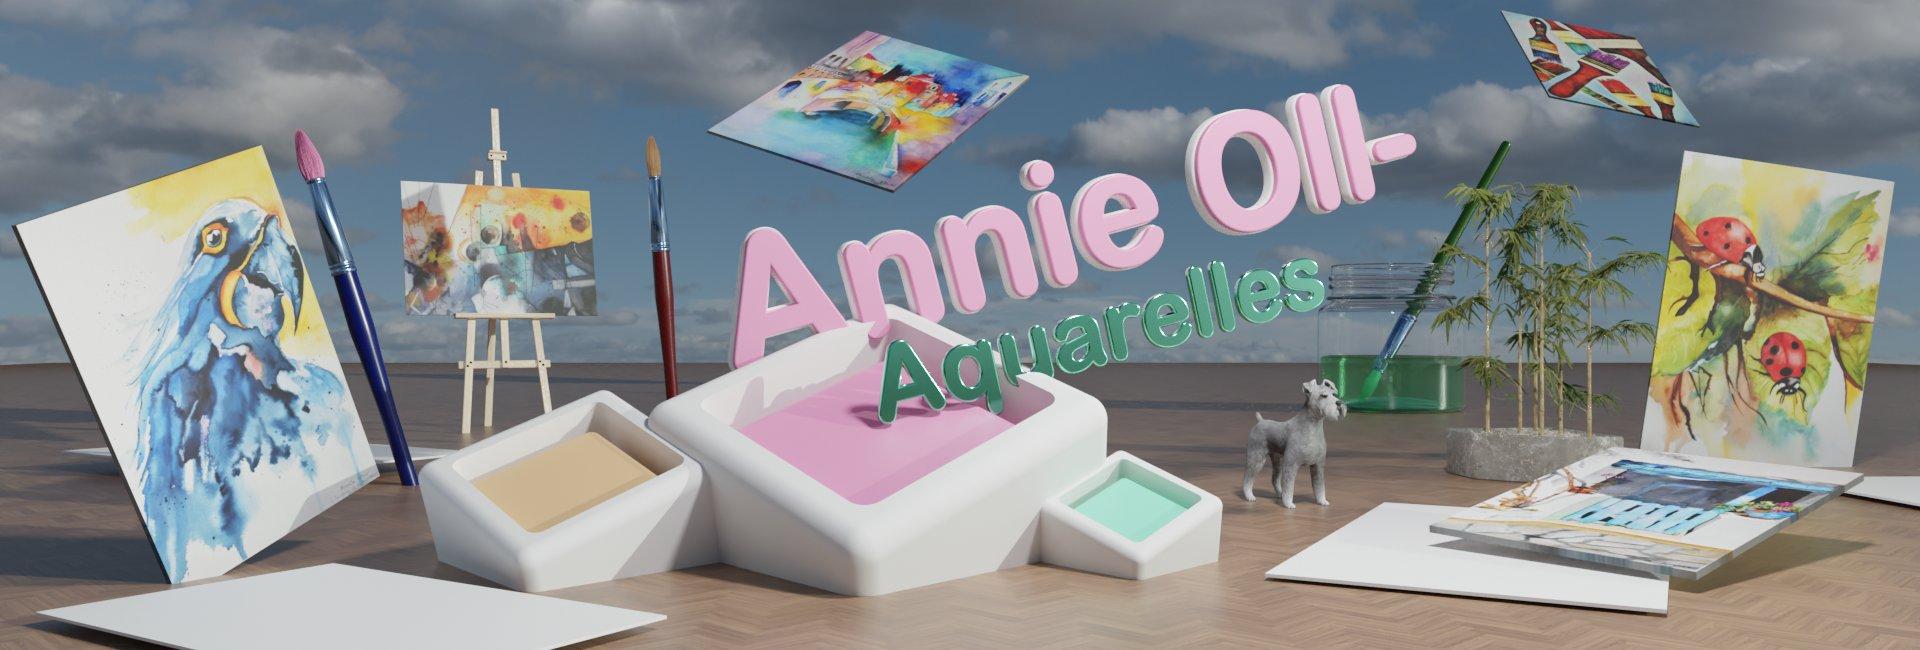 Annie Oll- Aquarelles